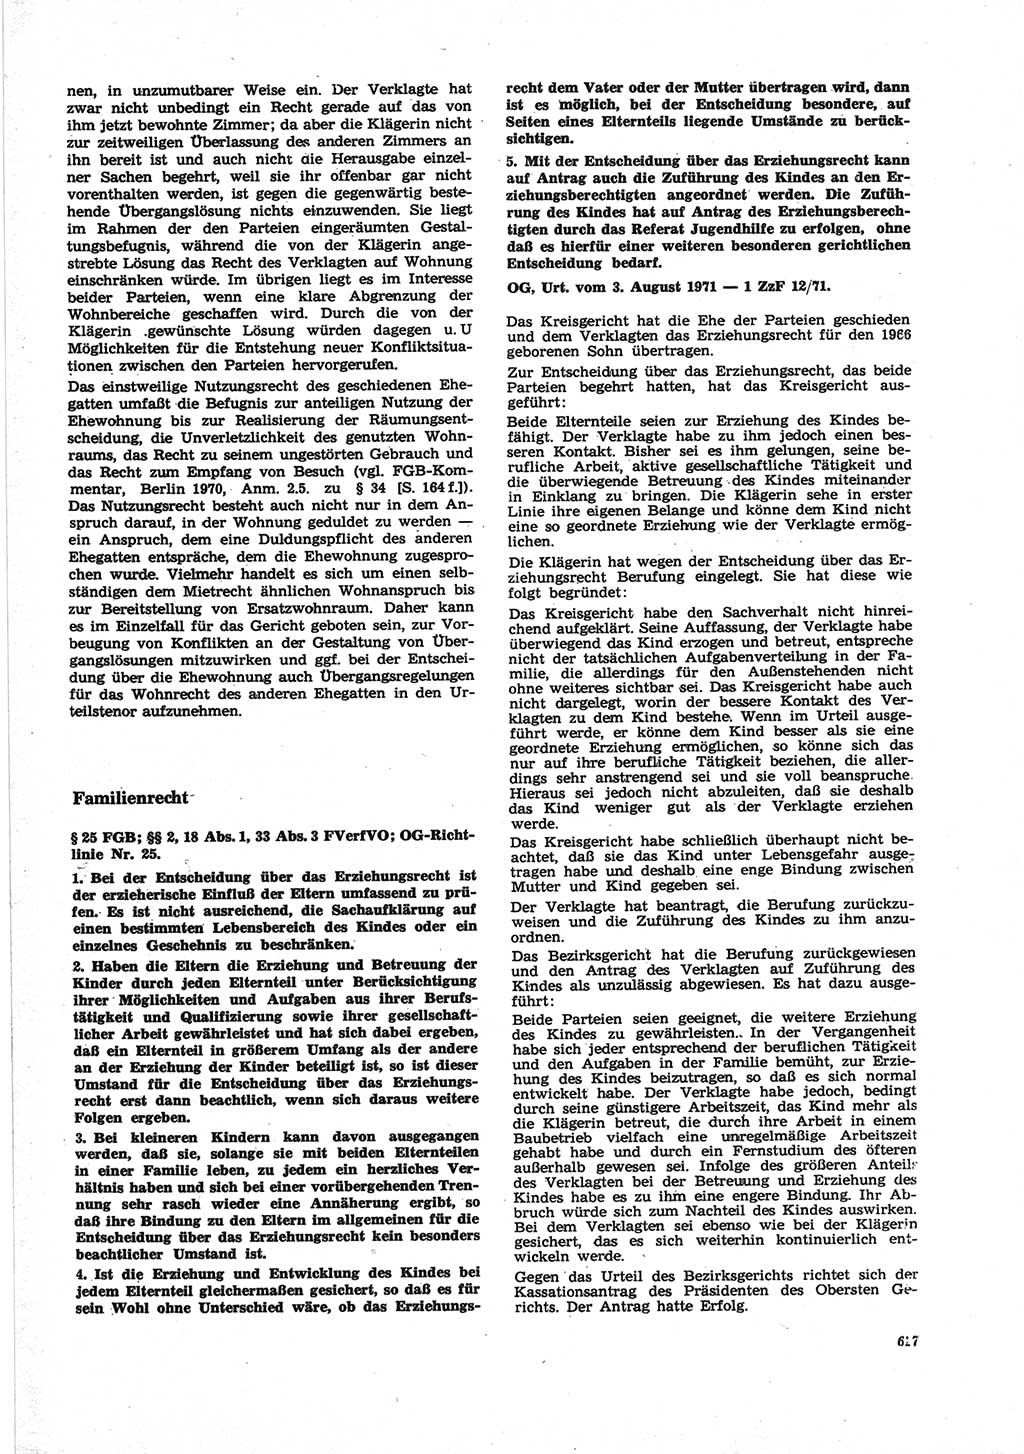 Neue Justiz (NJ), Zeitschrift für Recht und Rechtswissenschaft [Deutsche Demokratische Republik (DDR)], 25. Jahrgang 1971, Seite 627 (NJ DDR 1971, S. 627)